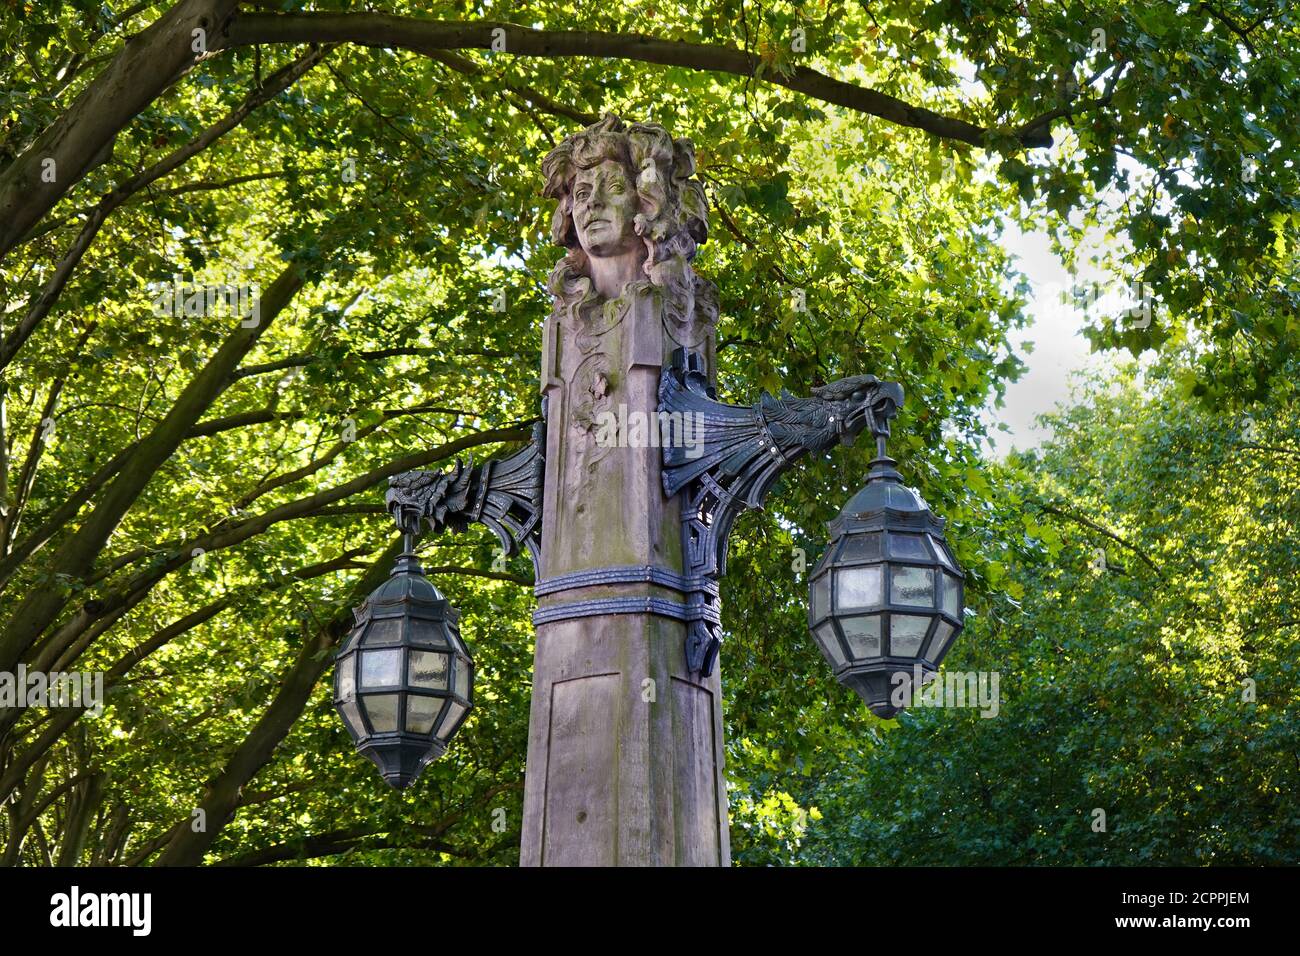 Ancienne lanterne en pierre sur le boulevard commerçant Königsallee, dans le centre-ville de Düsseldorf, entourée de vieux arbres verts. Banque D'Images